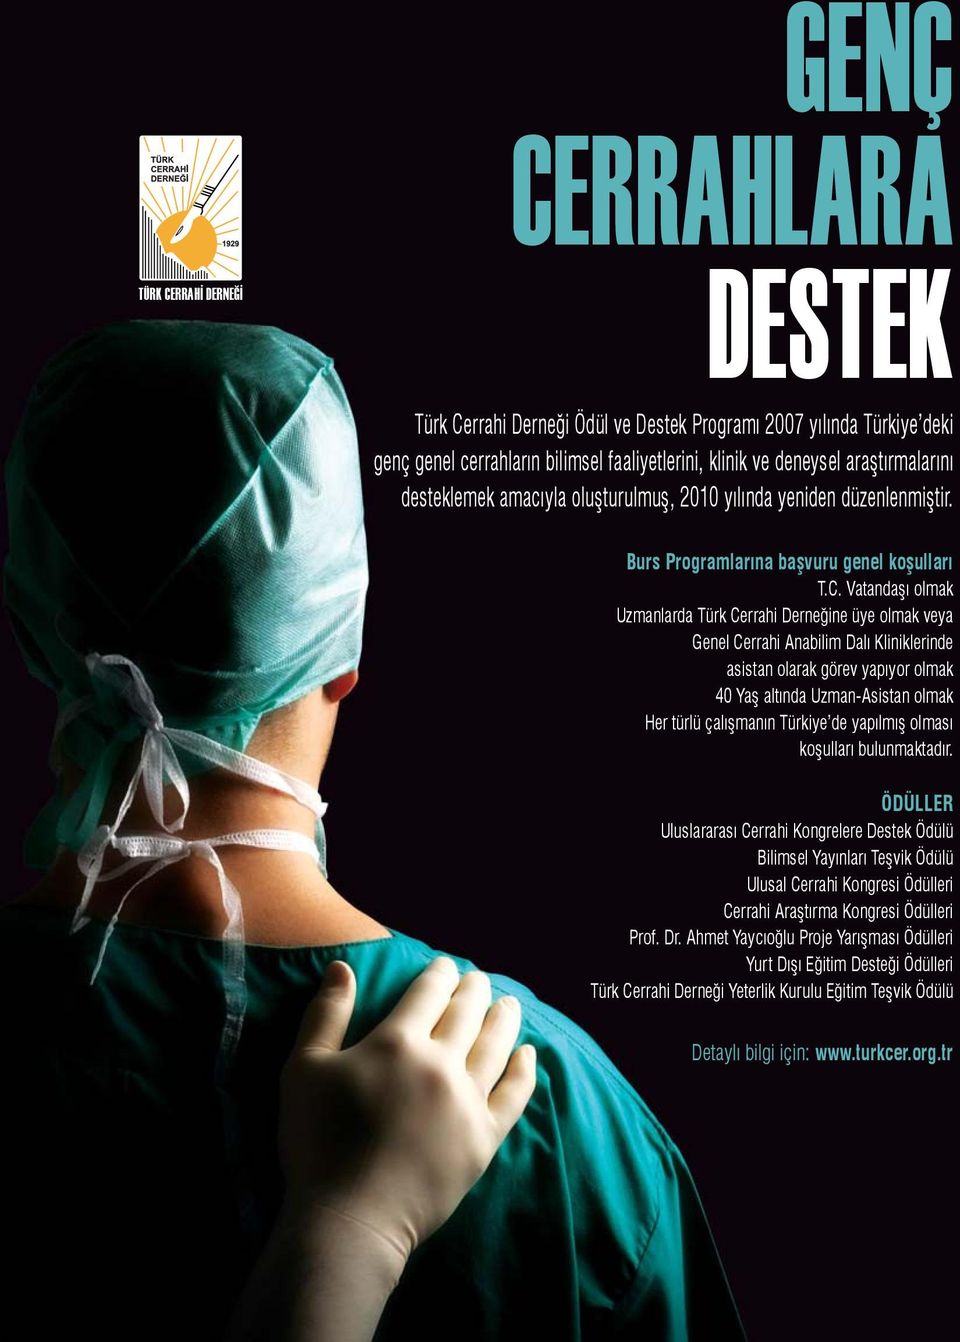 Vatandaşı olmak Uzmanlarda Türk Cerrahi Derneğine üye olmak veya Genel Cerrahi Anabilim Dalı Kliniklerinde asistan olarak görev yapıyor olmak 40 Yaş altında Uzman-Asistan olmak Her türlü çalışmanın